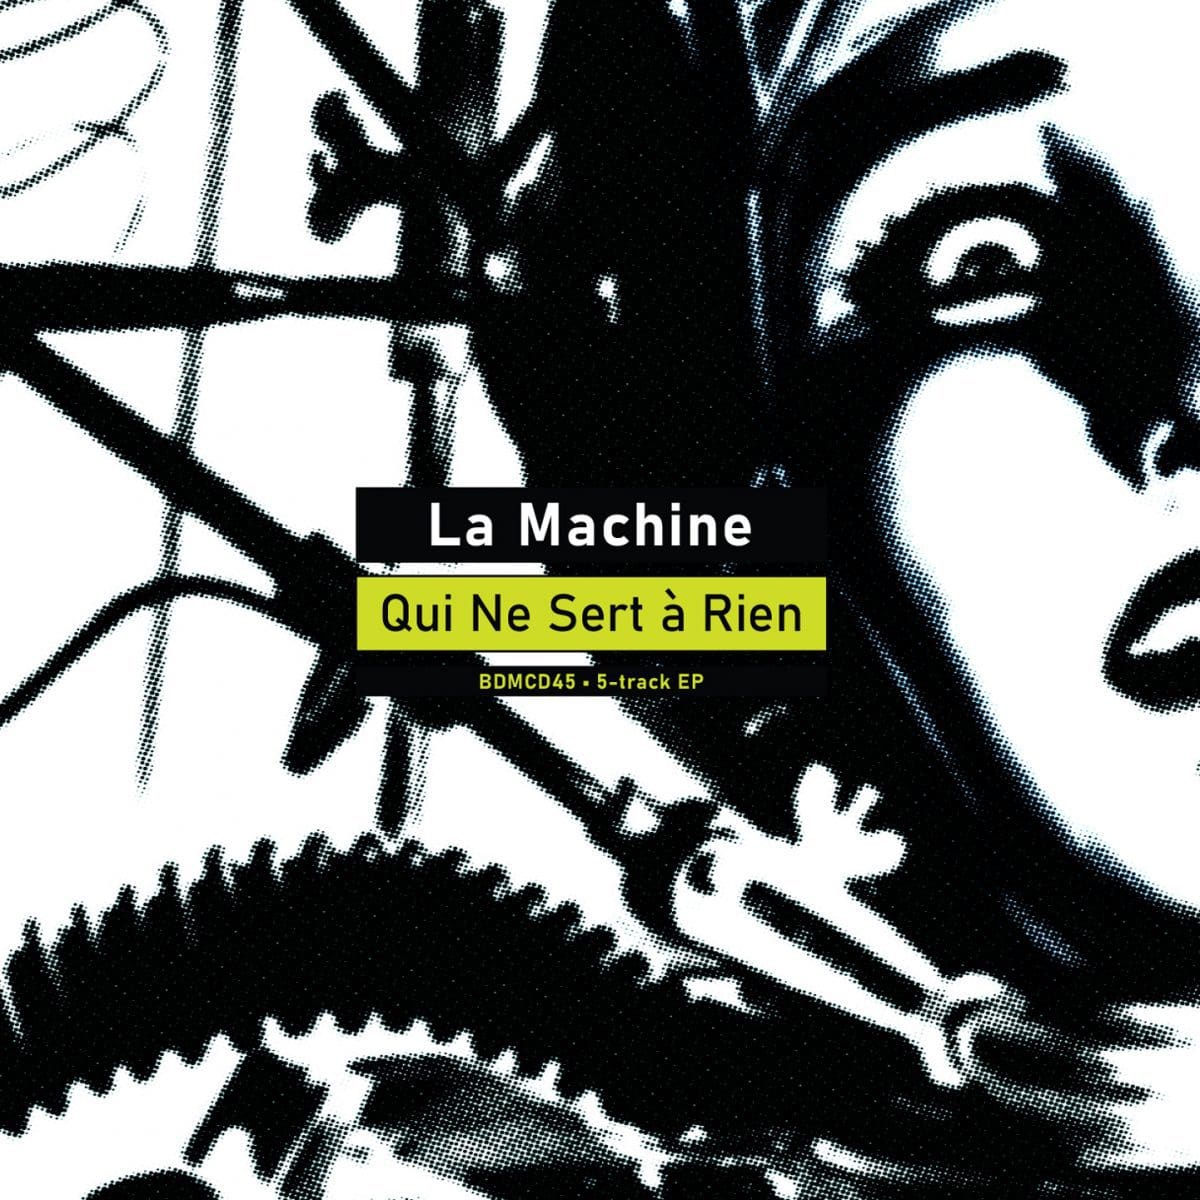 La Machine launches debut single and video 'La Machine Qui Ne Sert à Rien'